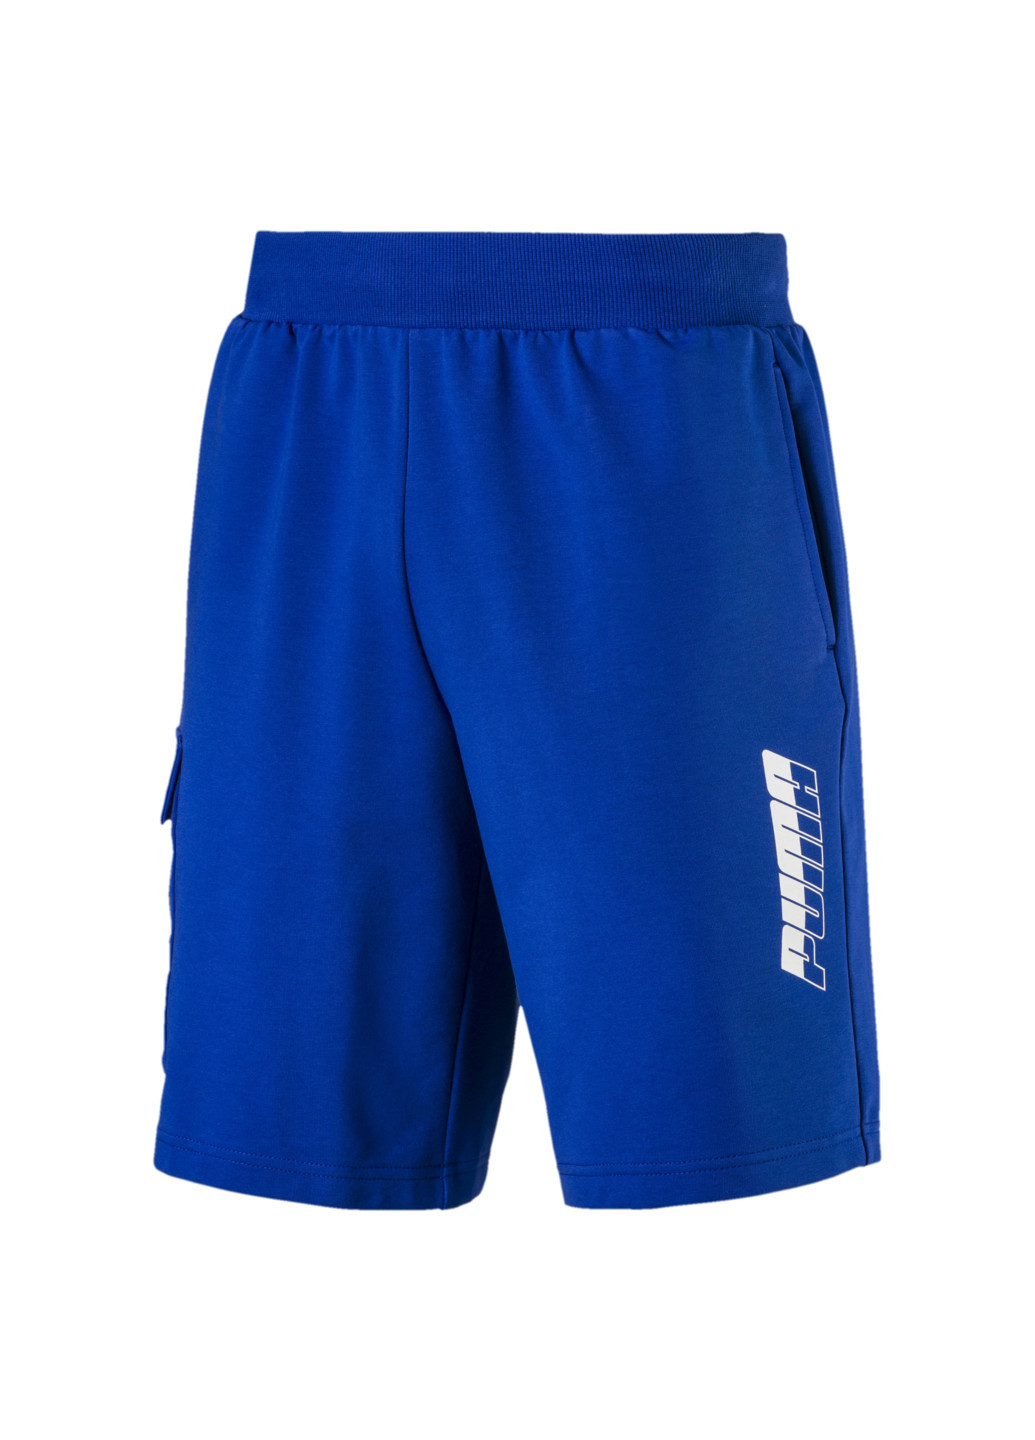 Шорты Puma Rebel Shorts 9" синие спортивные